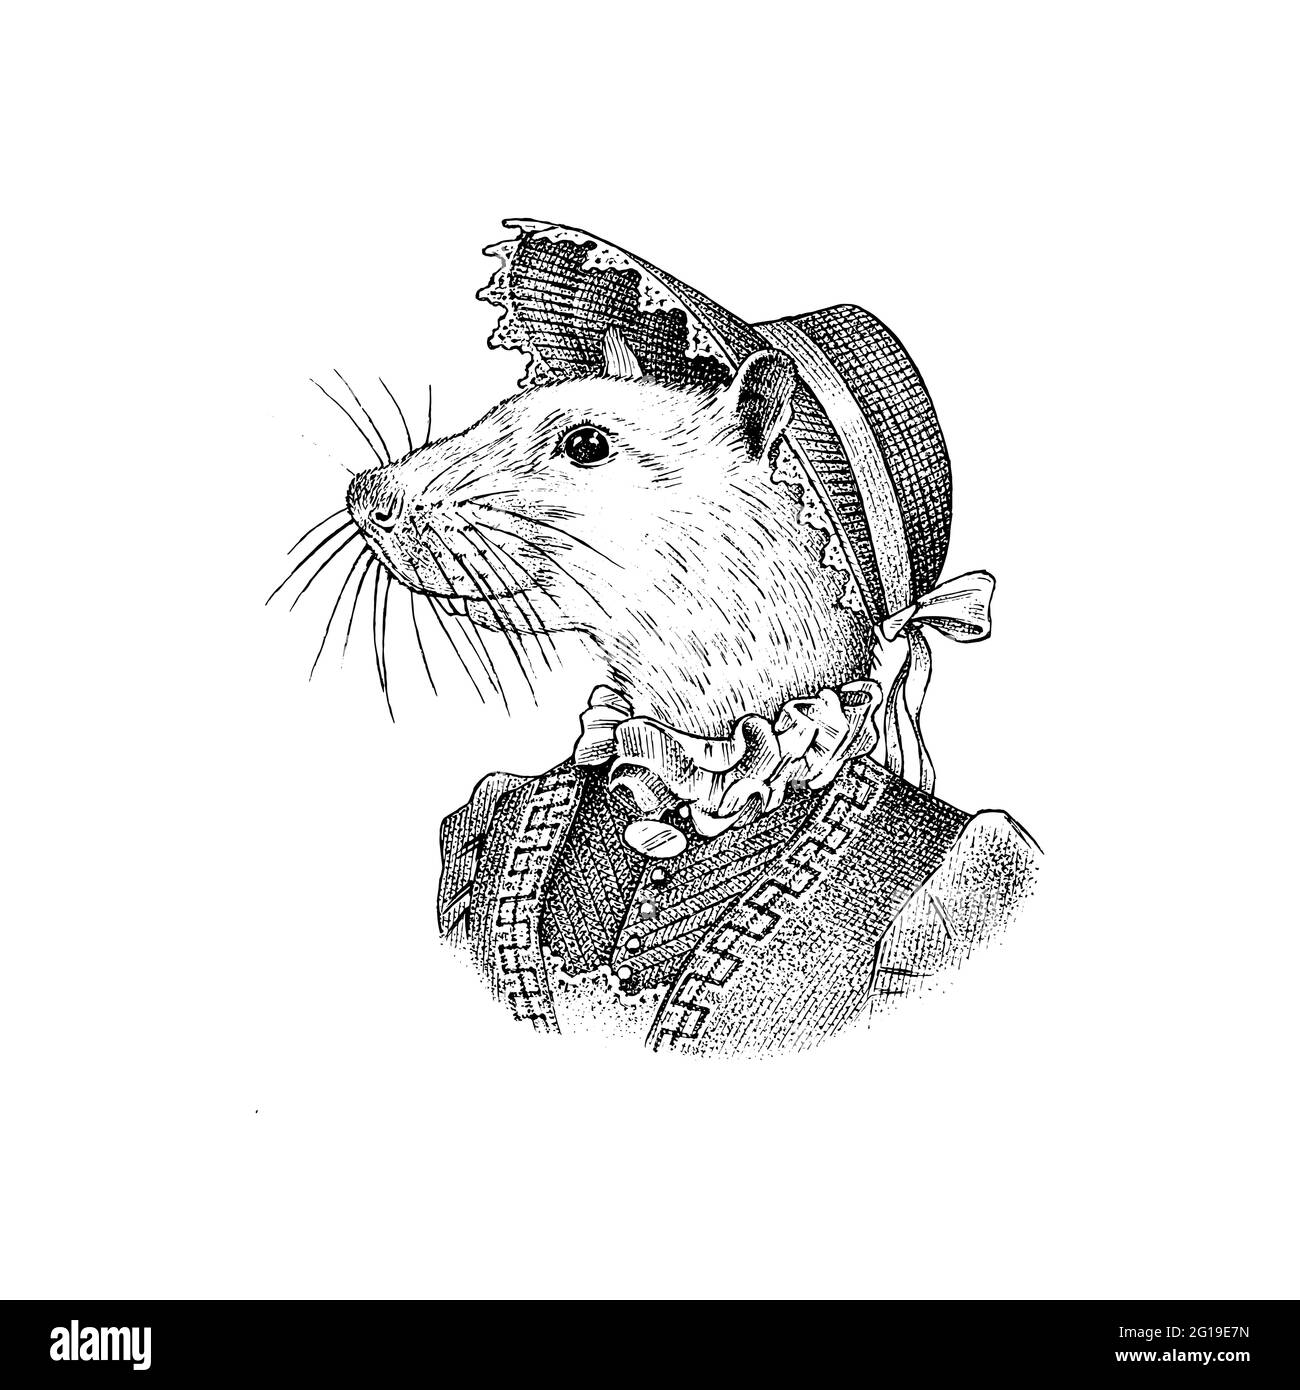 Mouse bianco con cappello e tuta. Donna o donna vittoriana. Carattere animale di moda. Immagine vettoriale incisa per etichetta, logo, T-shirt o tatuaggio Illustrazione Vettoriale